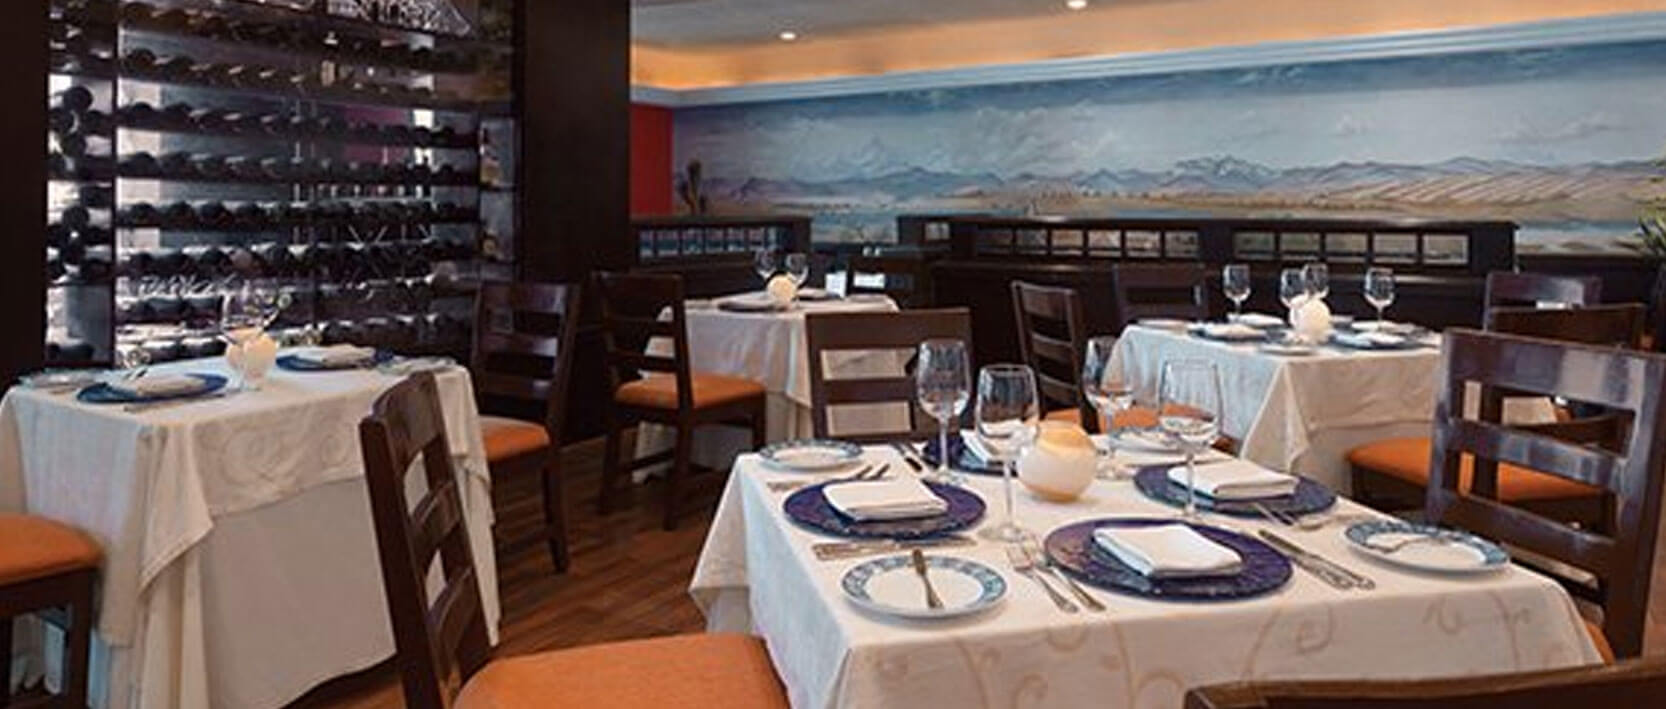 Gran Caribe Cancun Restaurants and Bars - Casa De Rosa